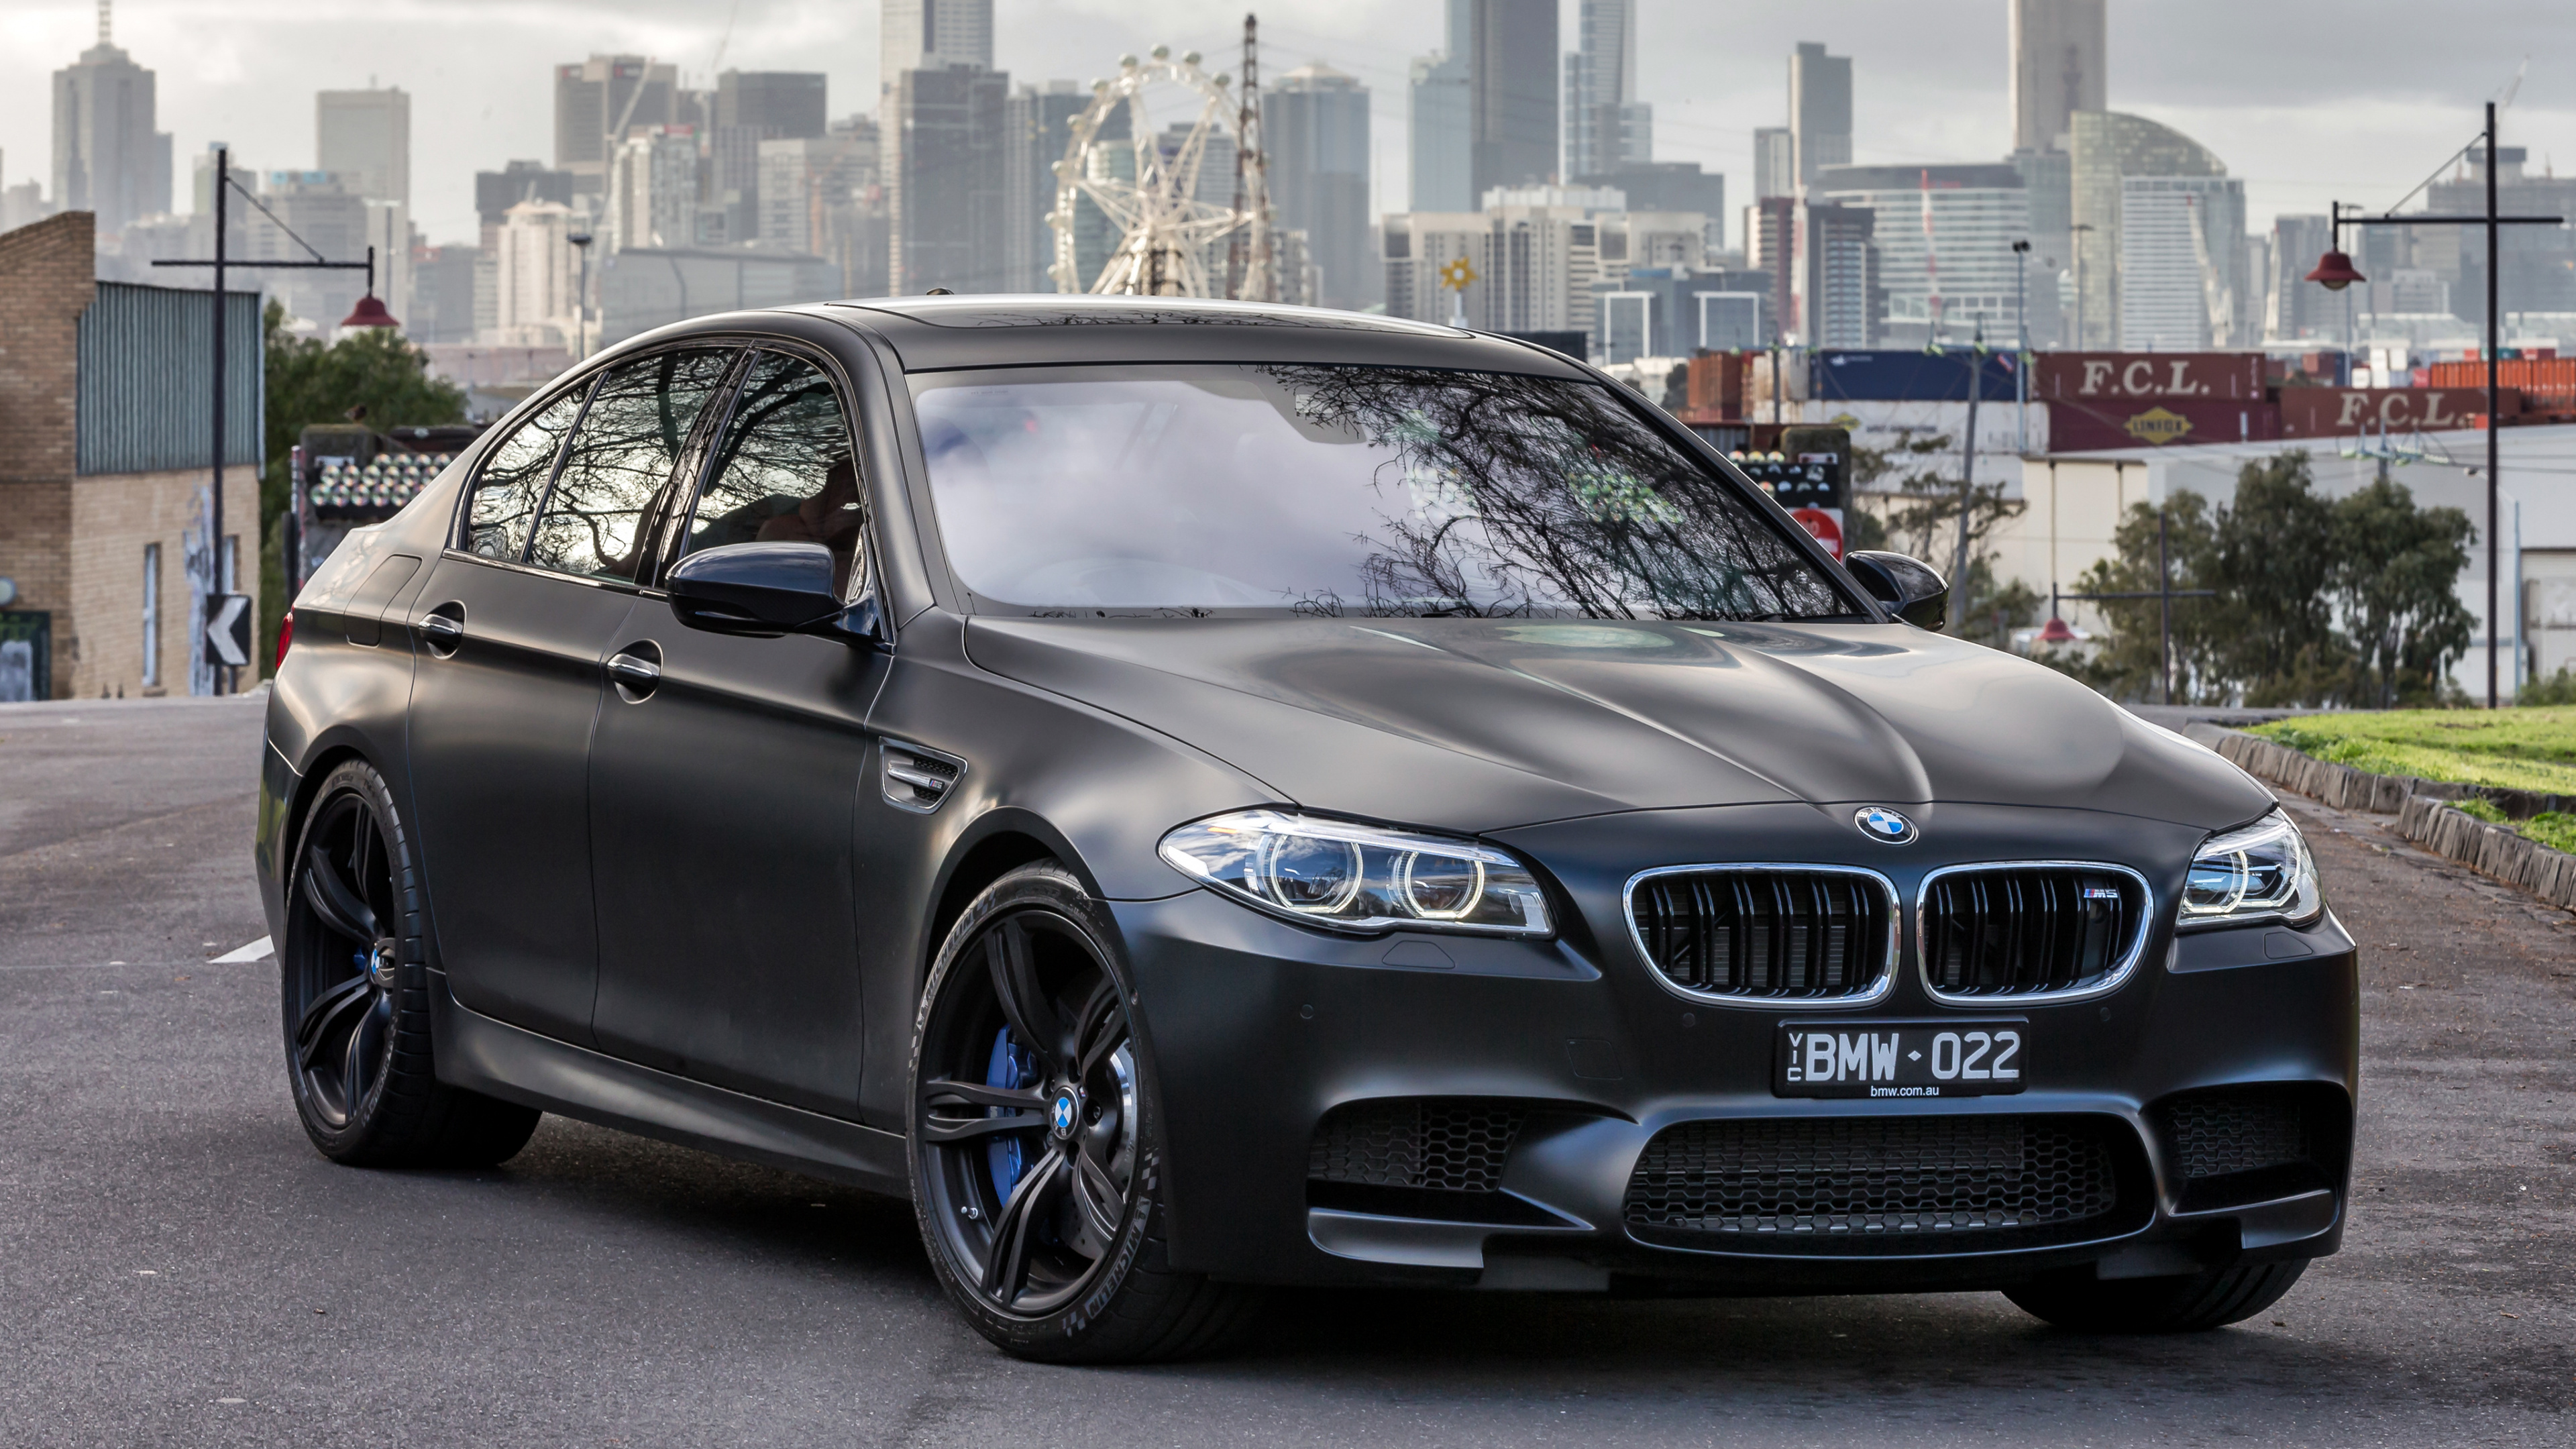 2018年BMW M5, 宝马, 宝马5系, 执行汽车, 铝合金轮毂 壁纸 3840x2160 允许